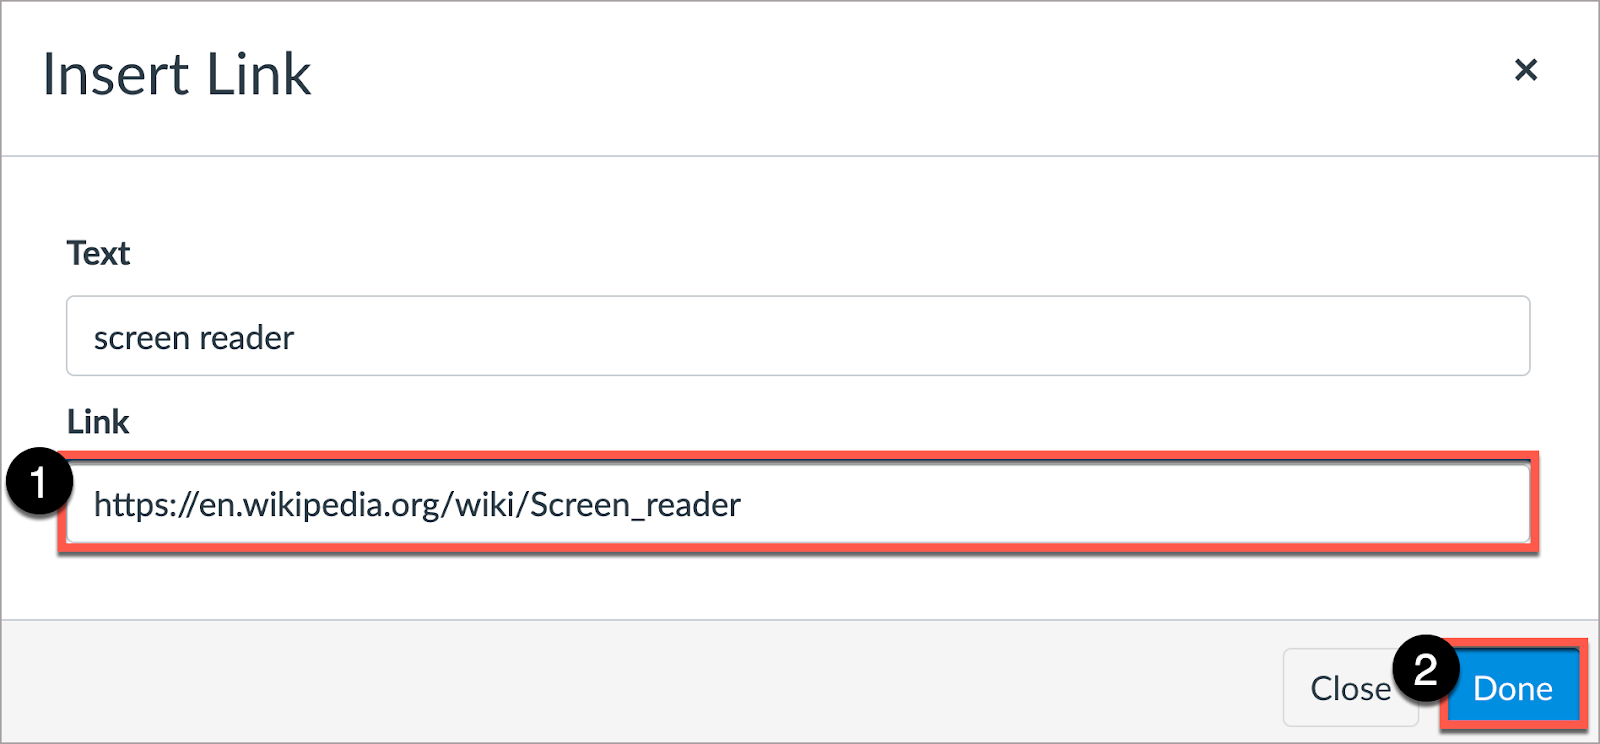 In Insert Link window, write description under Link field, then select Done. 